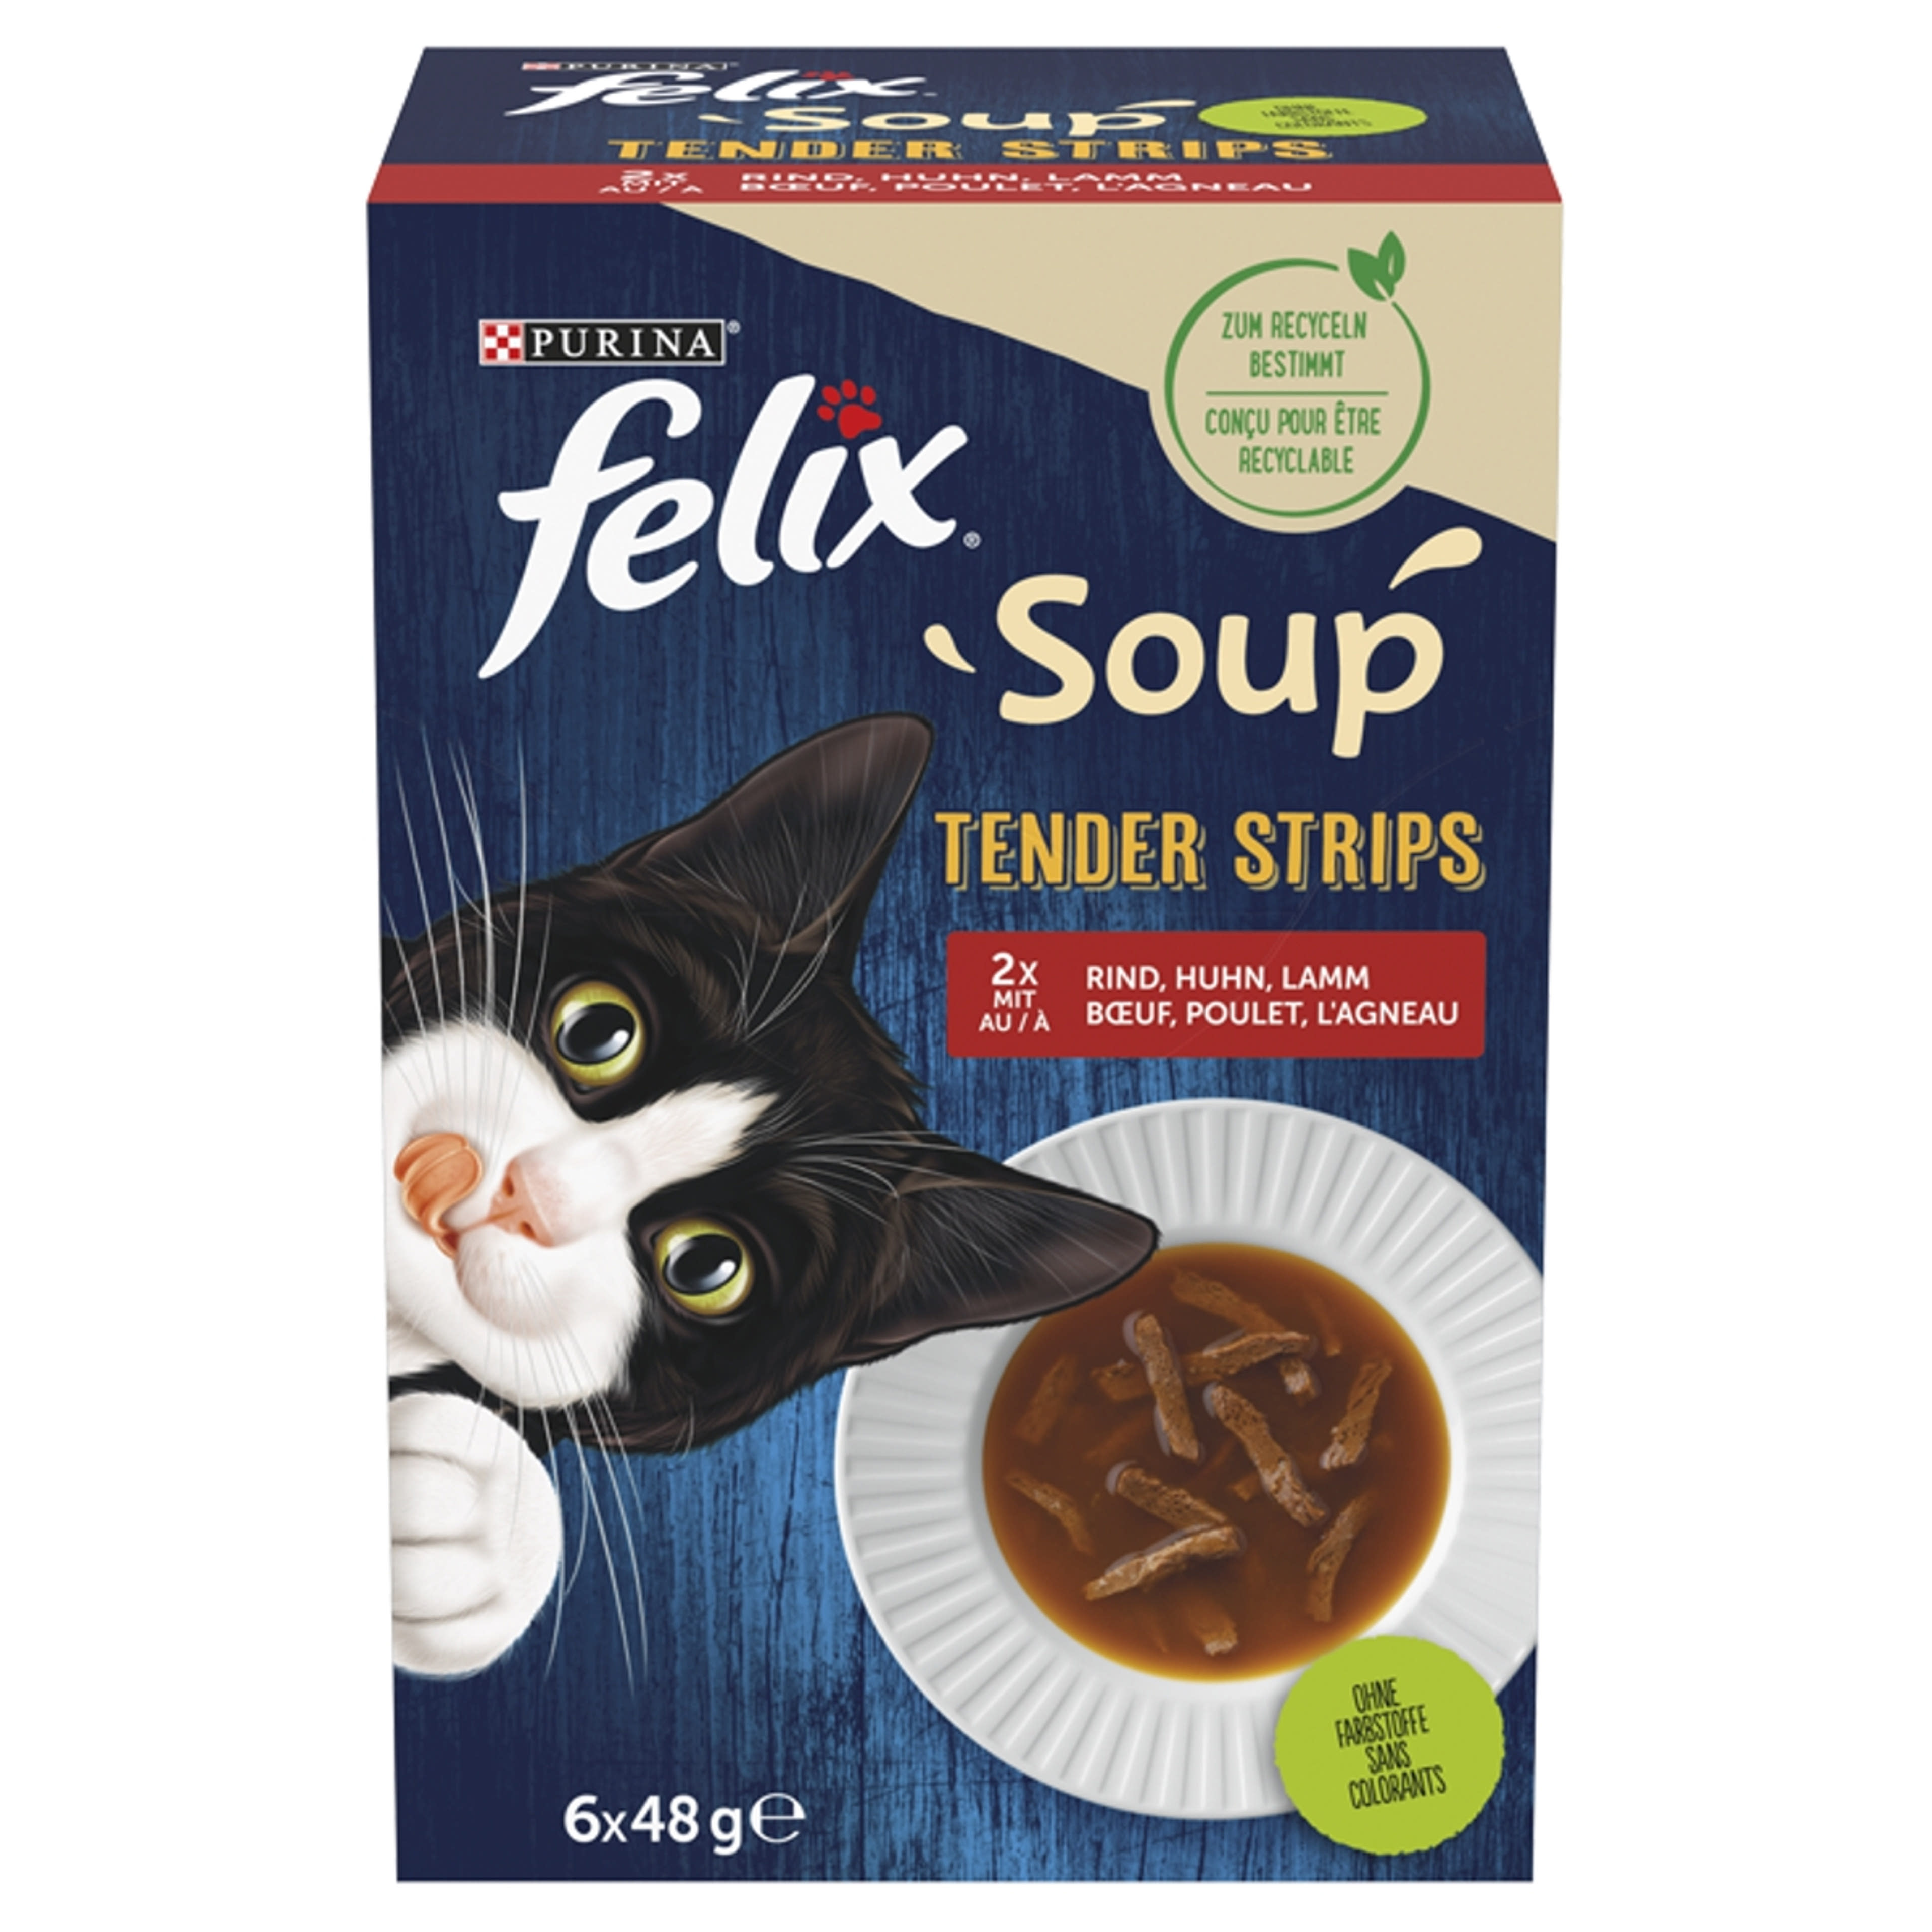 Felix Soup Tender Strips Házias válogatás alutasak macskáknak 6 x 48 g - 288 g-1